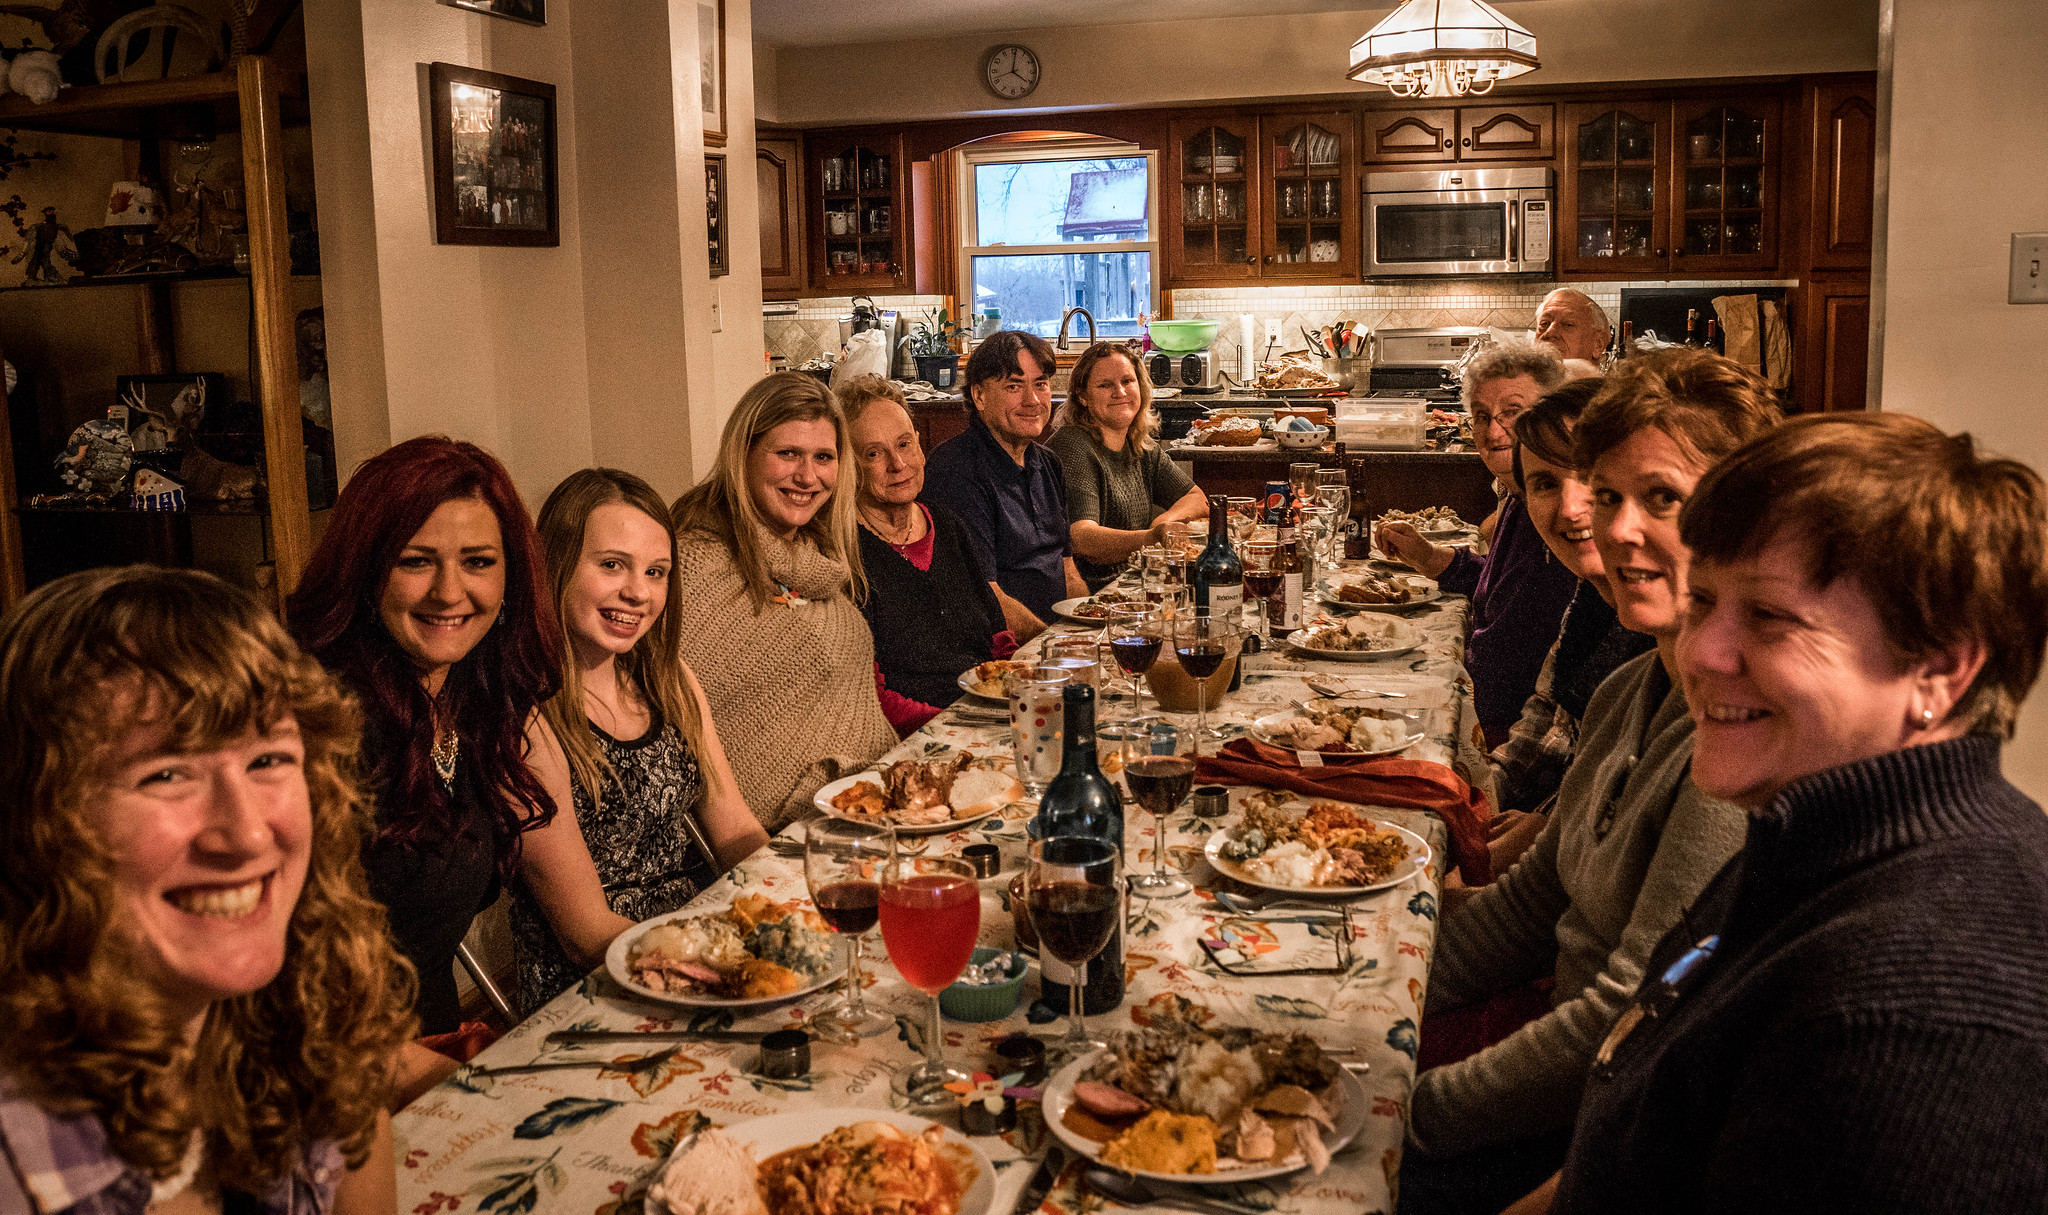 Familiares reunidos para la cena de Acción de Gracias | Foto: Flickr.com/s_mestdagh (CC BY-SA 2.0)